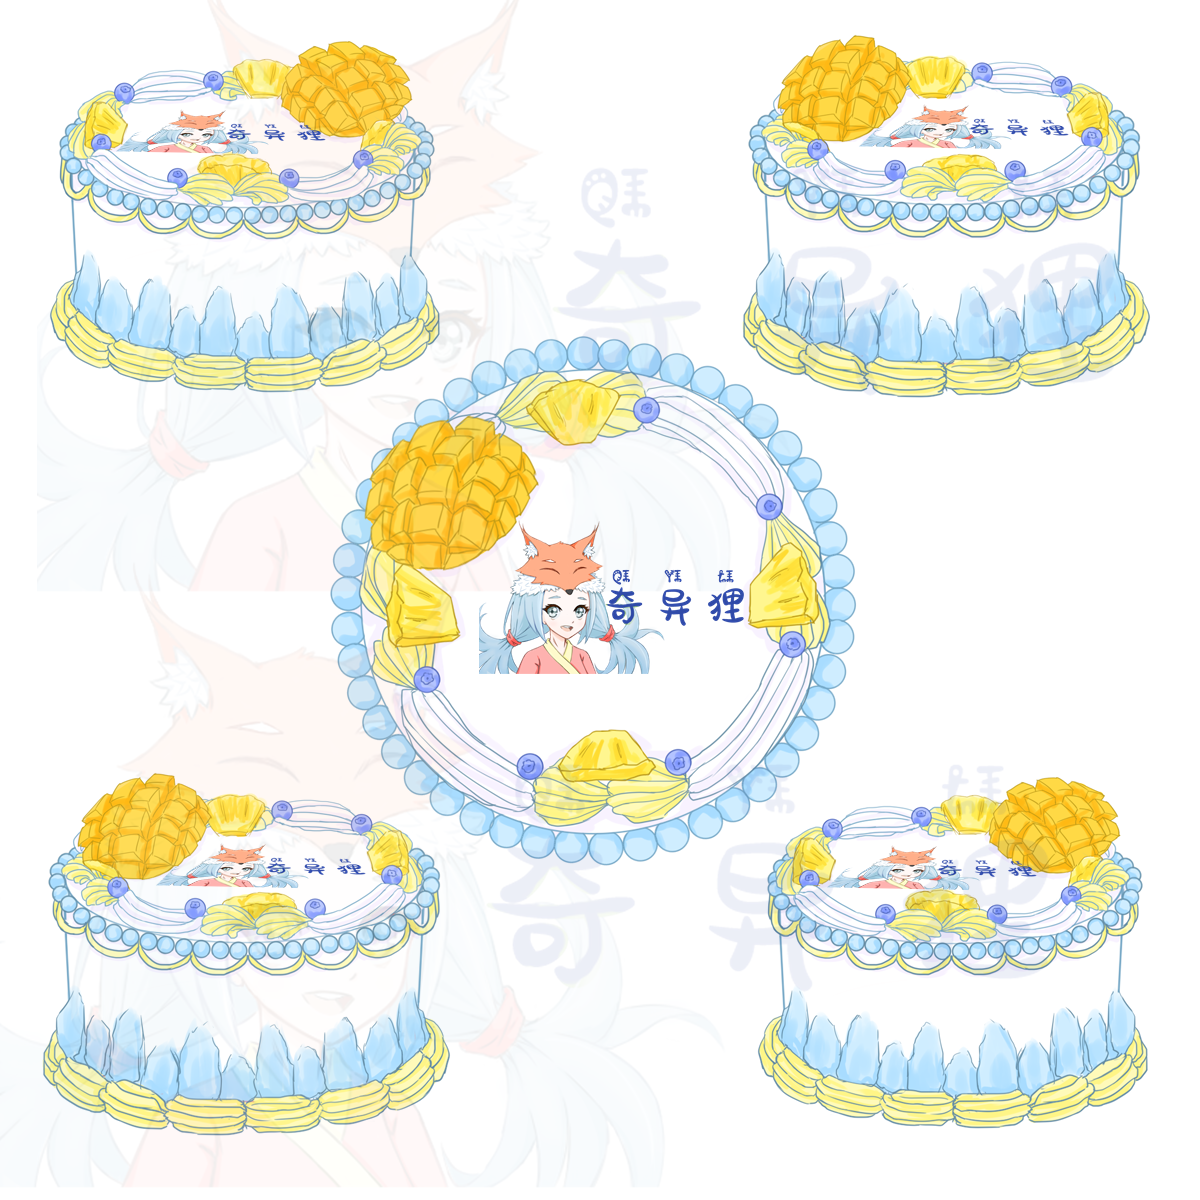 生日蛋糕三视图-甜品美食